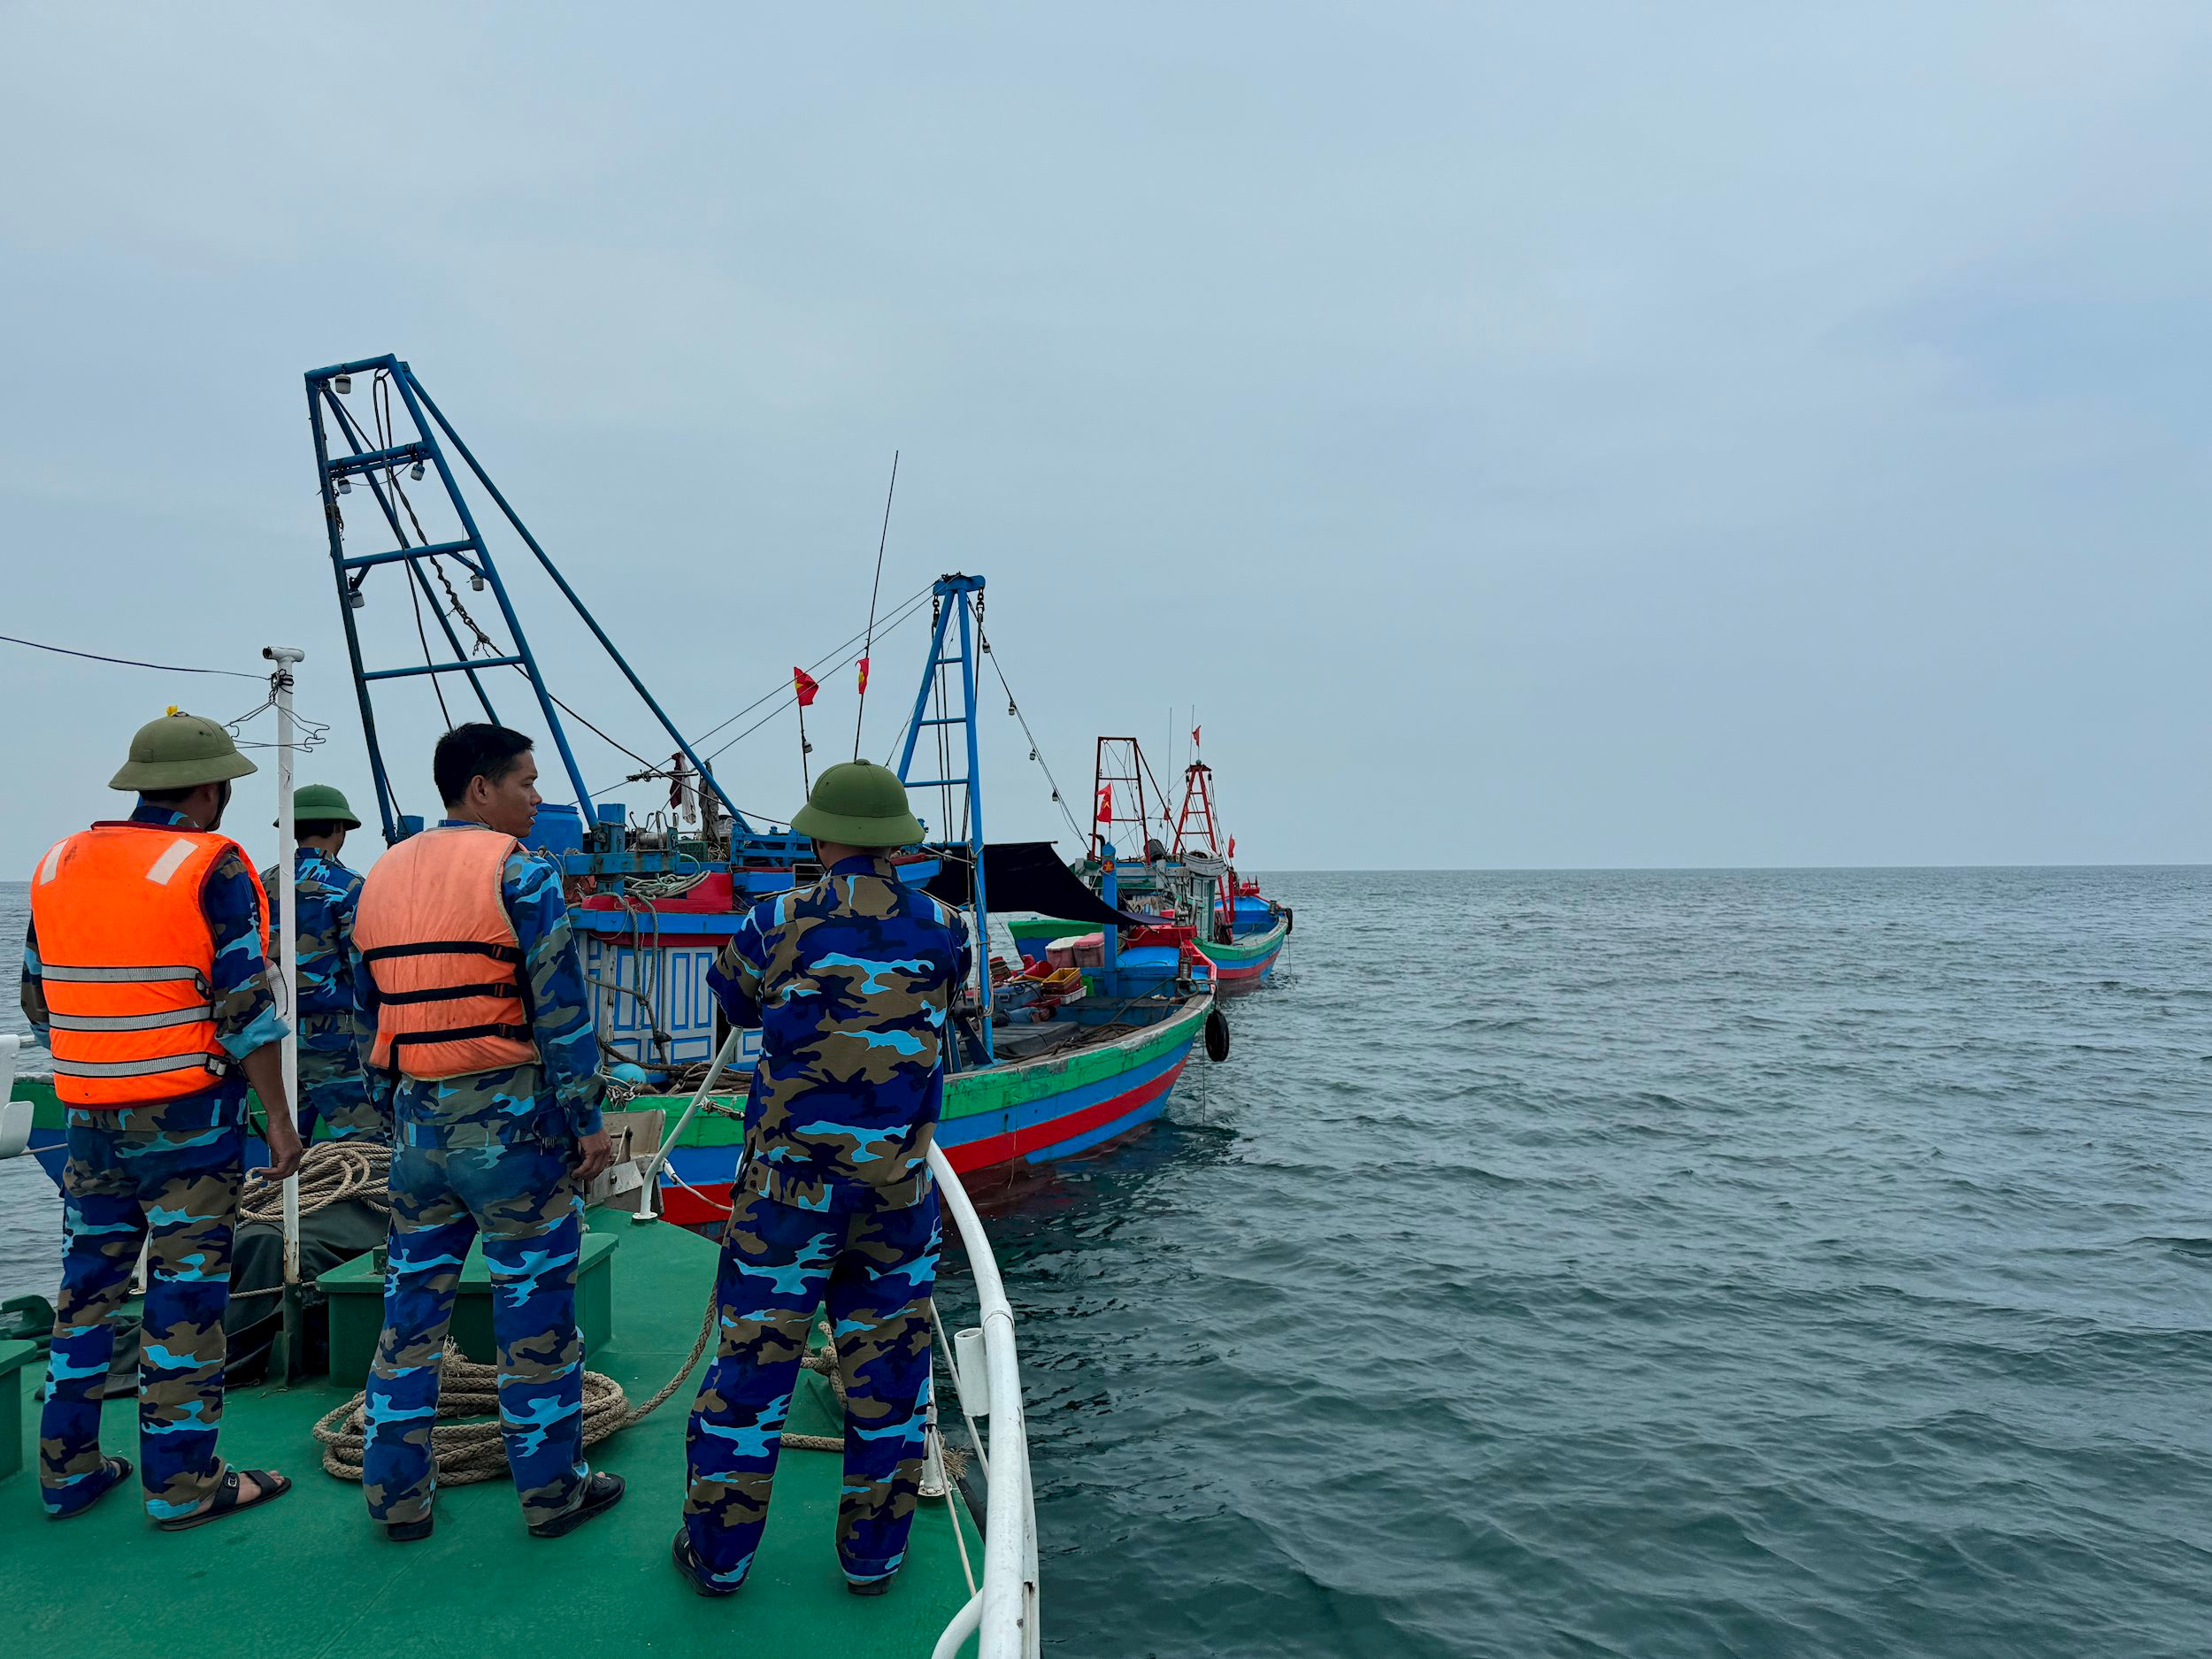 Ban chỉ đạo Quốc gia về chống khai thác thuỷ sản trái phép IUU yêu cầu tăng cường sự hiện diện, kiểm soát của lực lượng chức năng trên biển để kiểm tra, xử lý vi phạm. Ảnh Nguyễn Hải